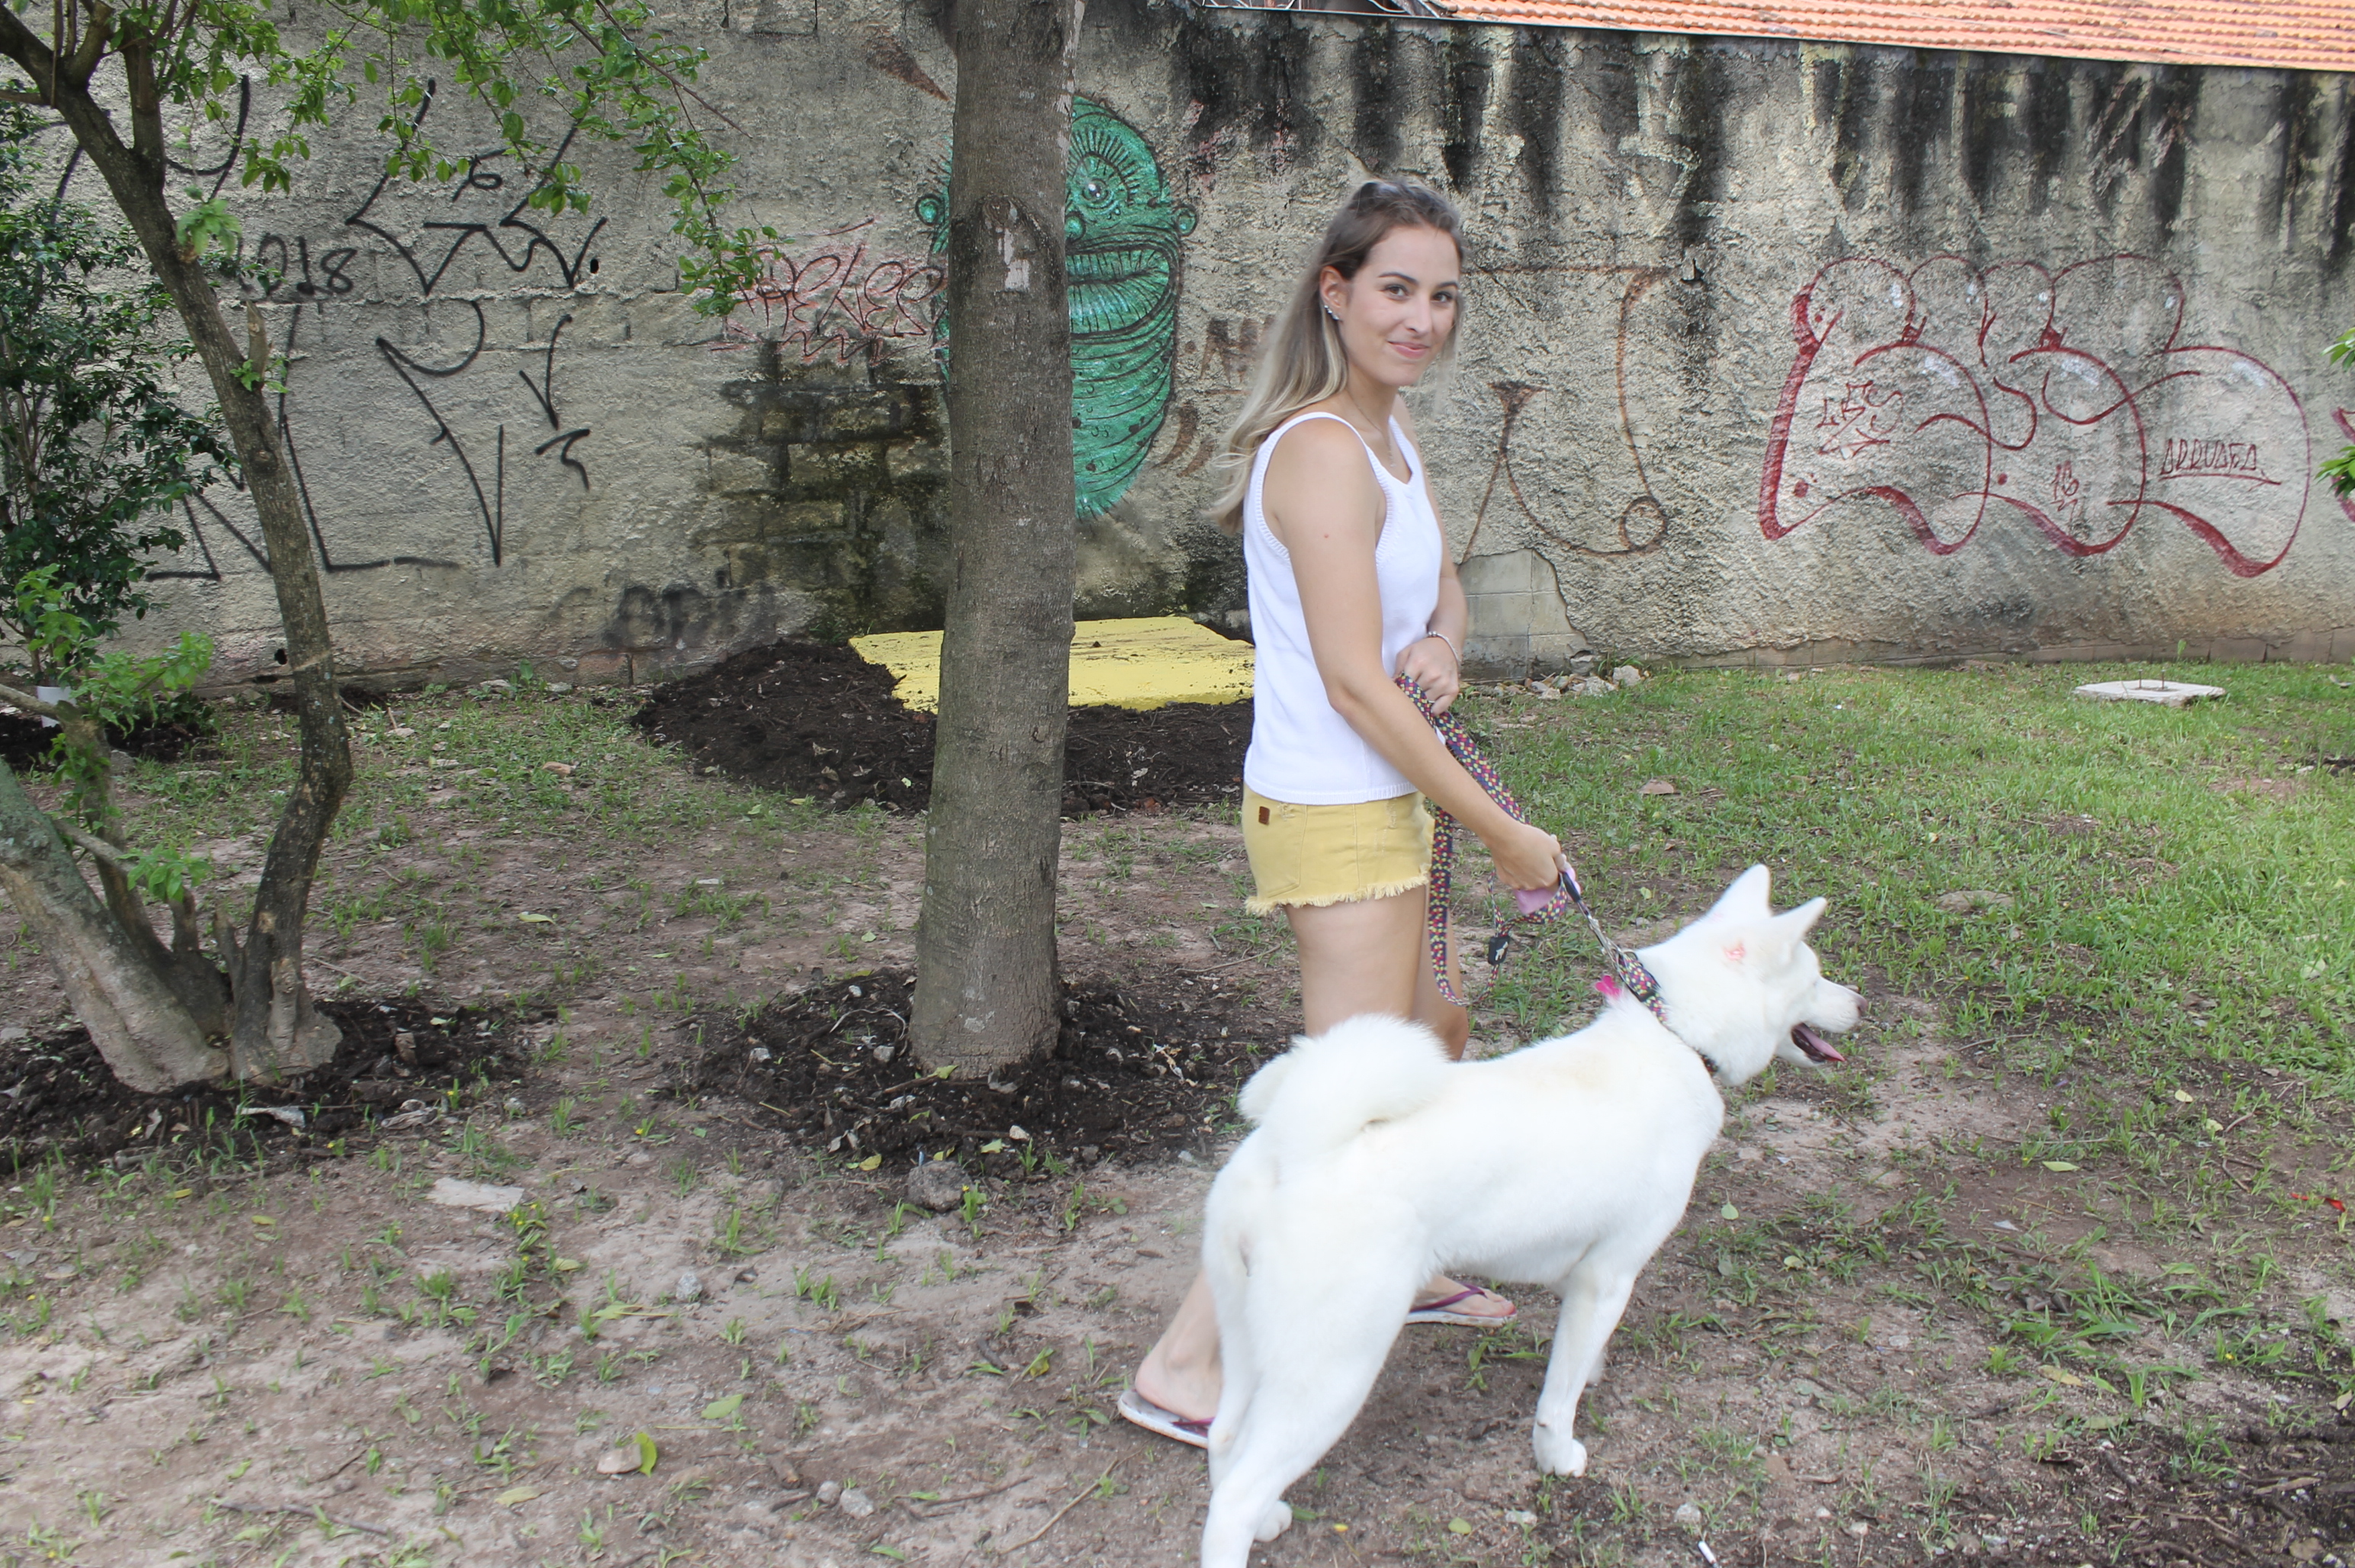 #PraCegoVer - Moradora da vizinhança com sua cadela toda branca. Ao fundo, árvores e um muro.